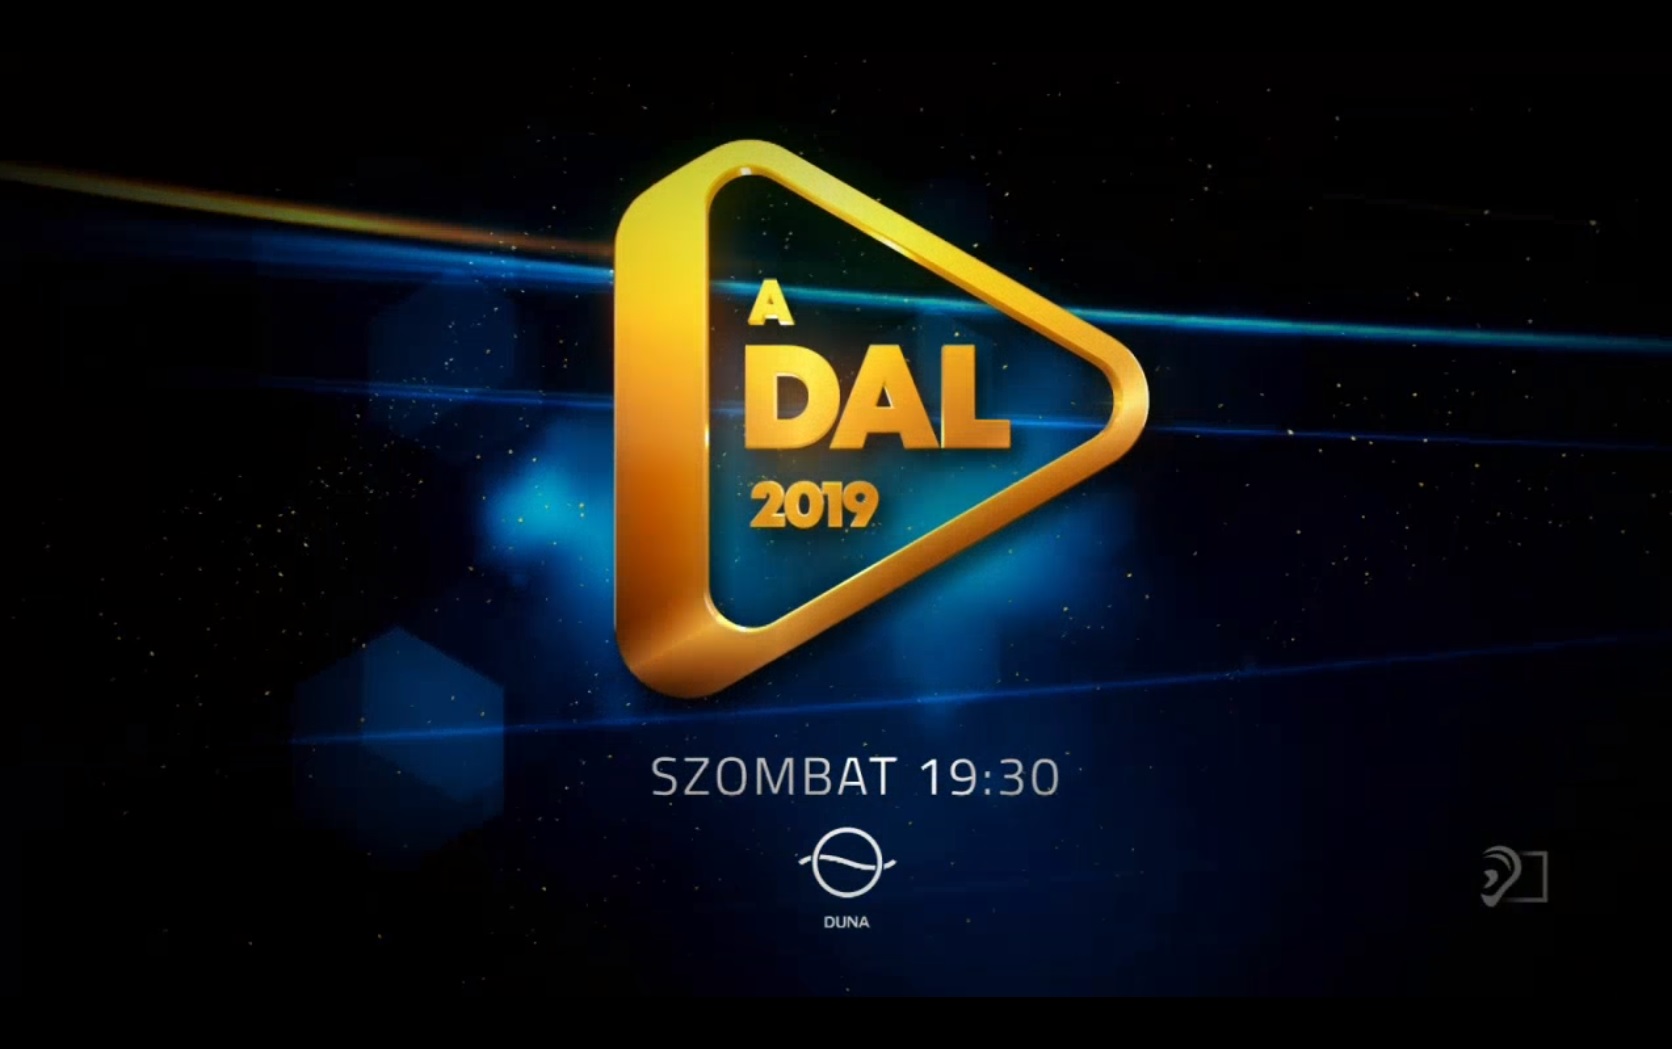  Saiba como seguir a primeira eliminatória do A Dal 2019 (Hungria)